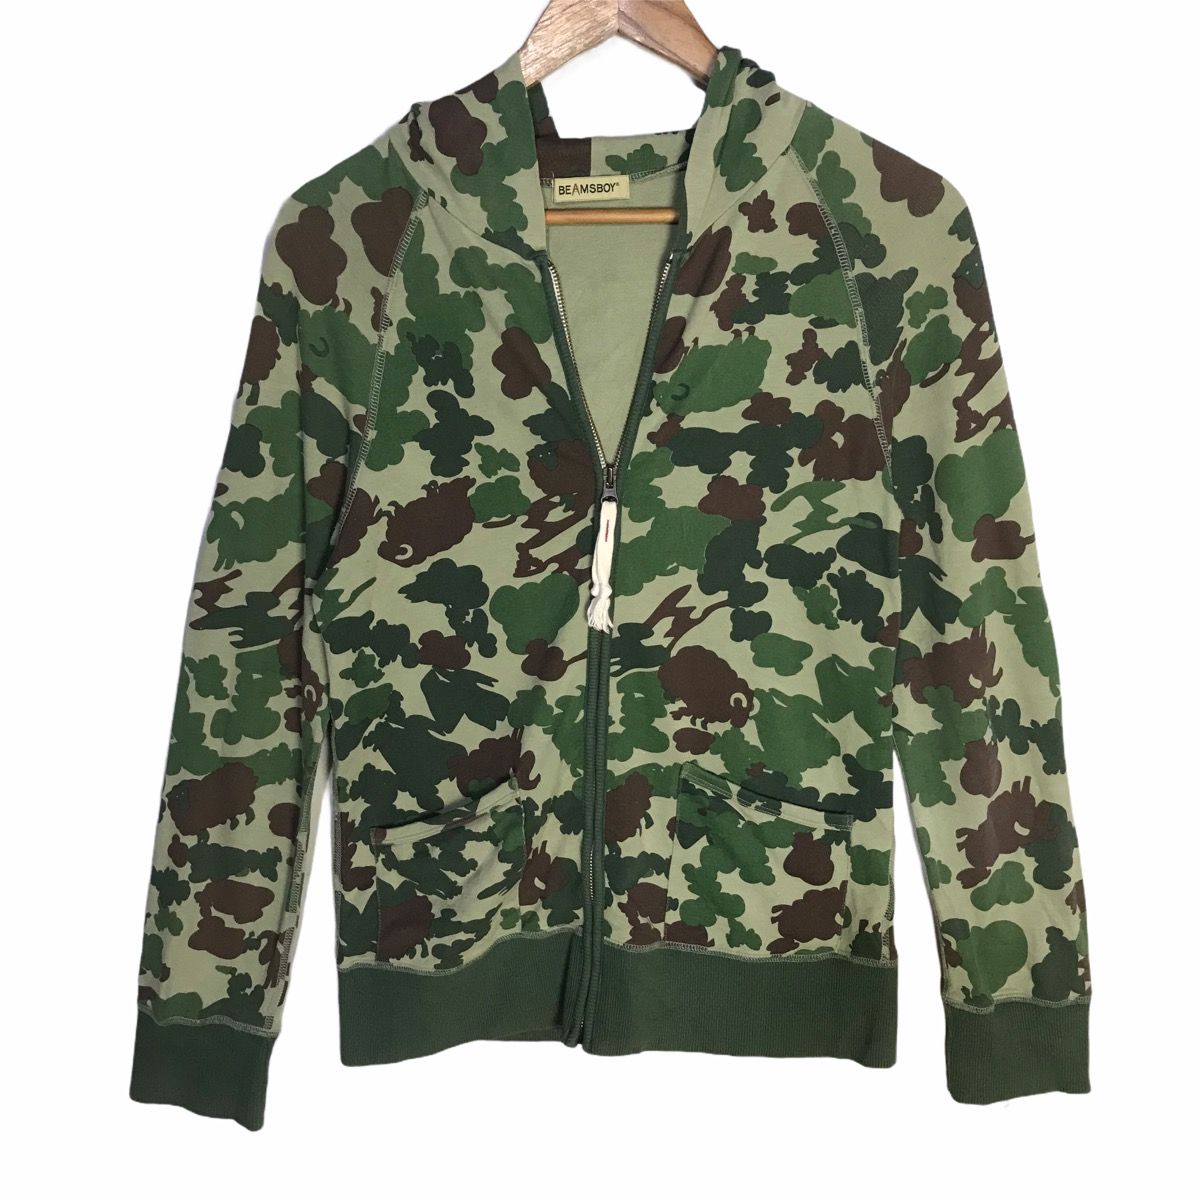 Beamsboy sheep camouflage patern zip up hoodie - 1